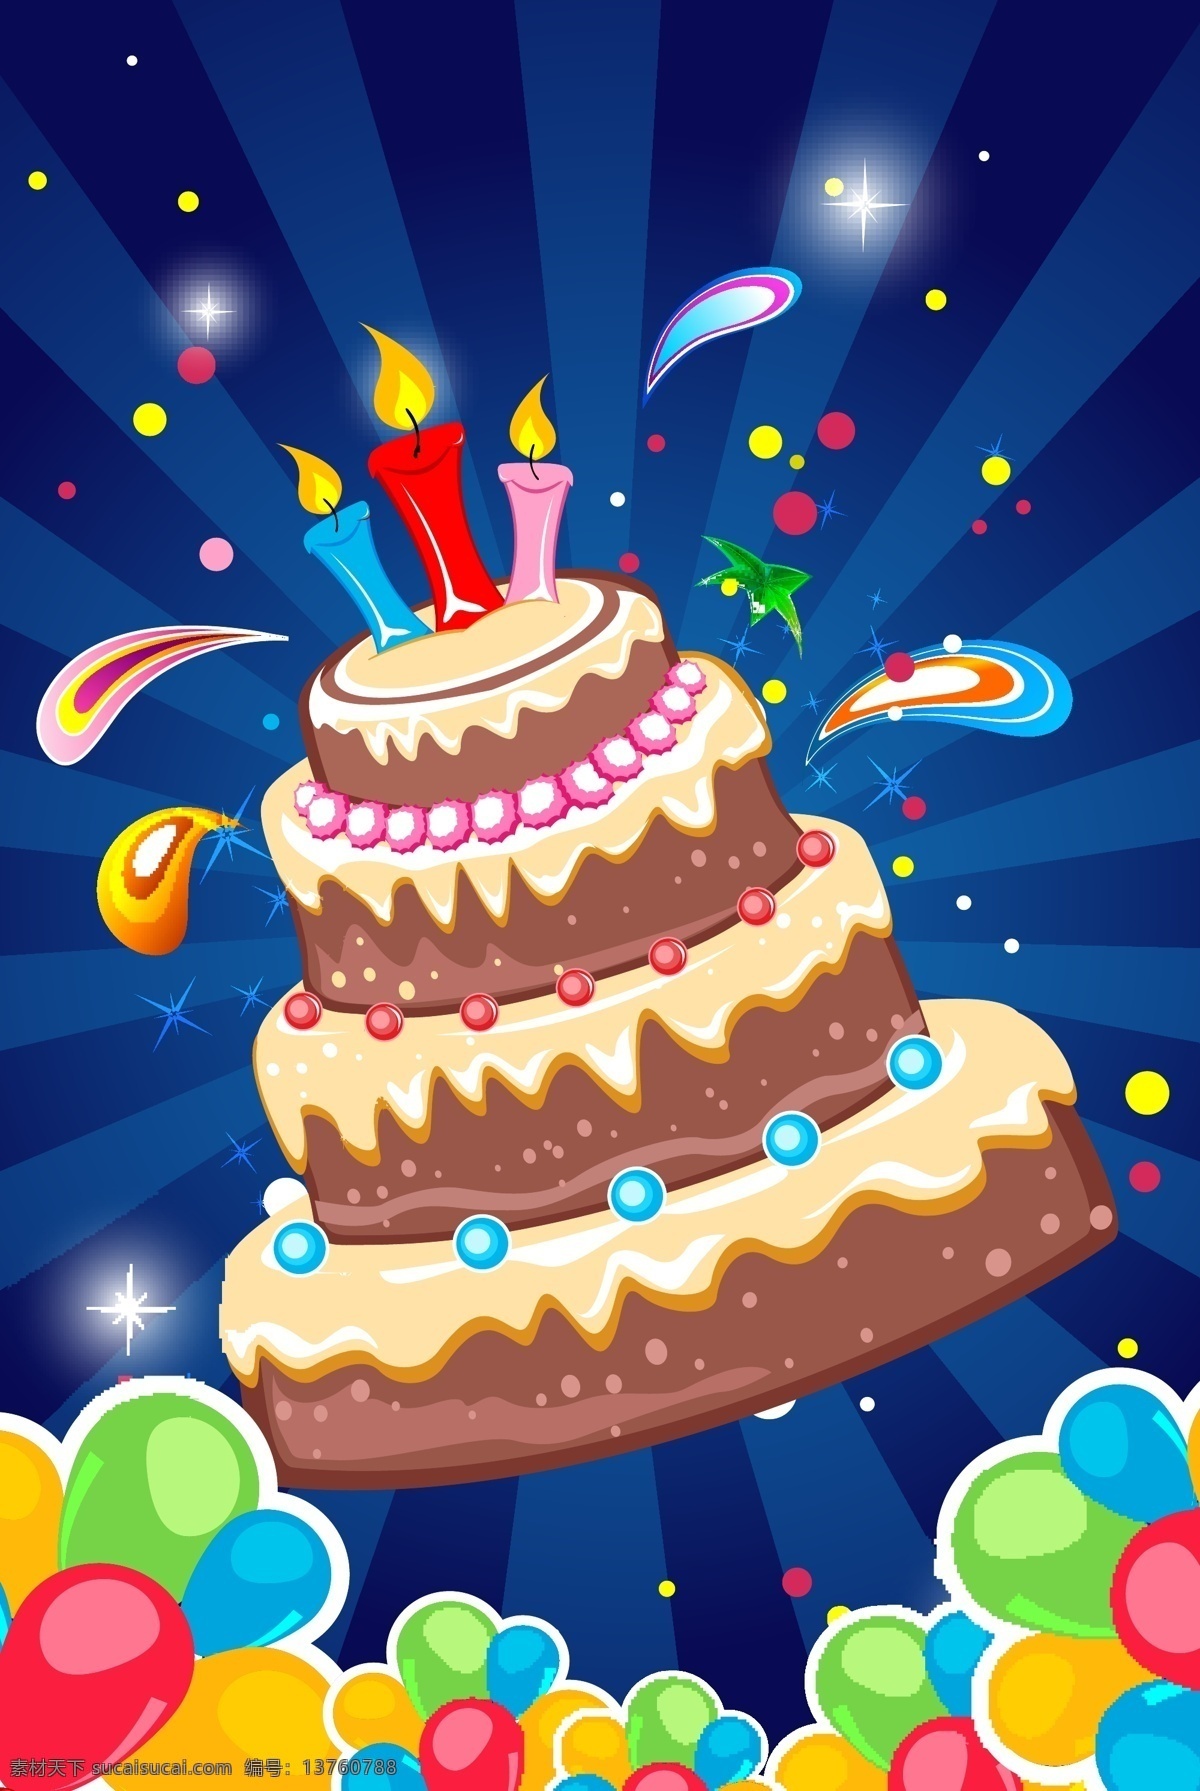 蛋糕免费下载 蛋糕 蜡烛 生日 矢量图 日常生活